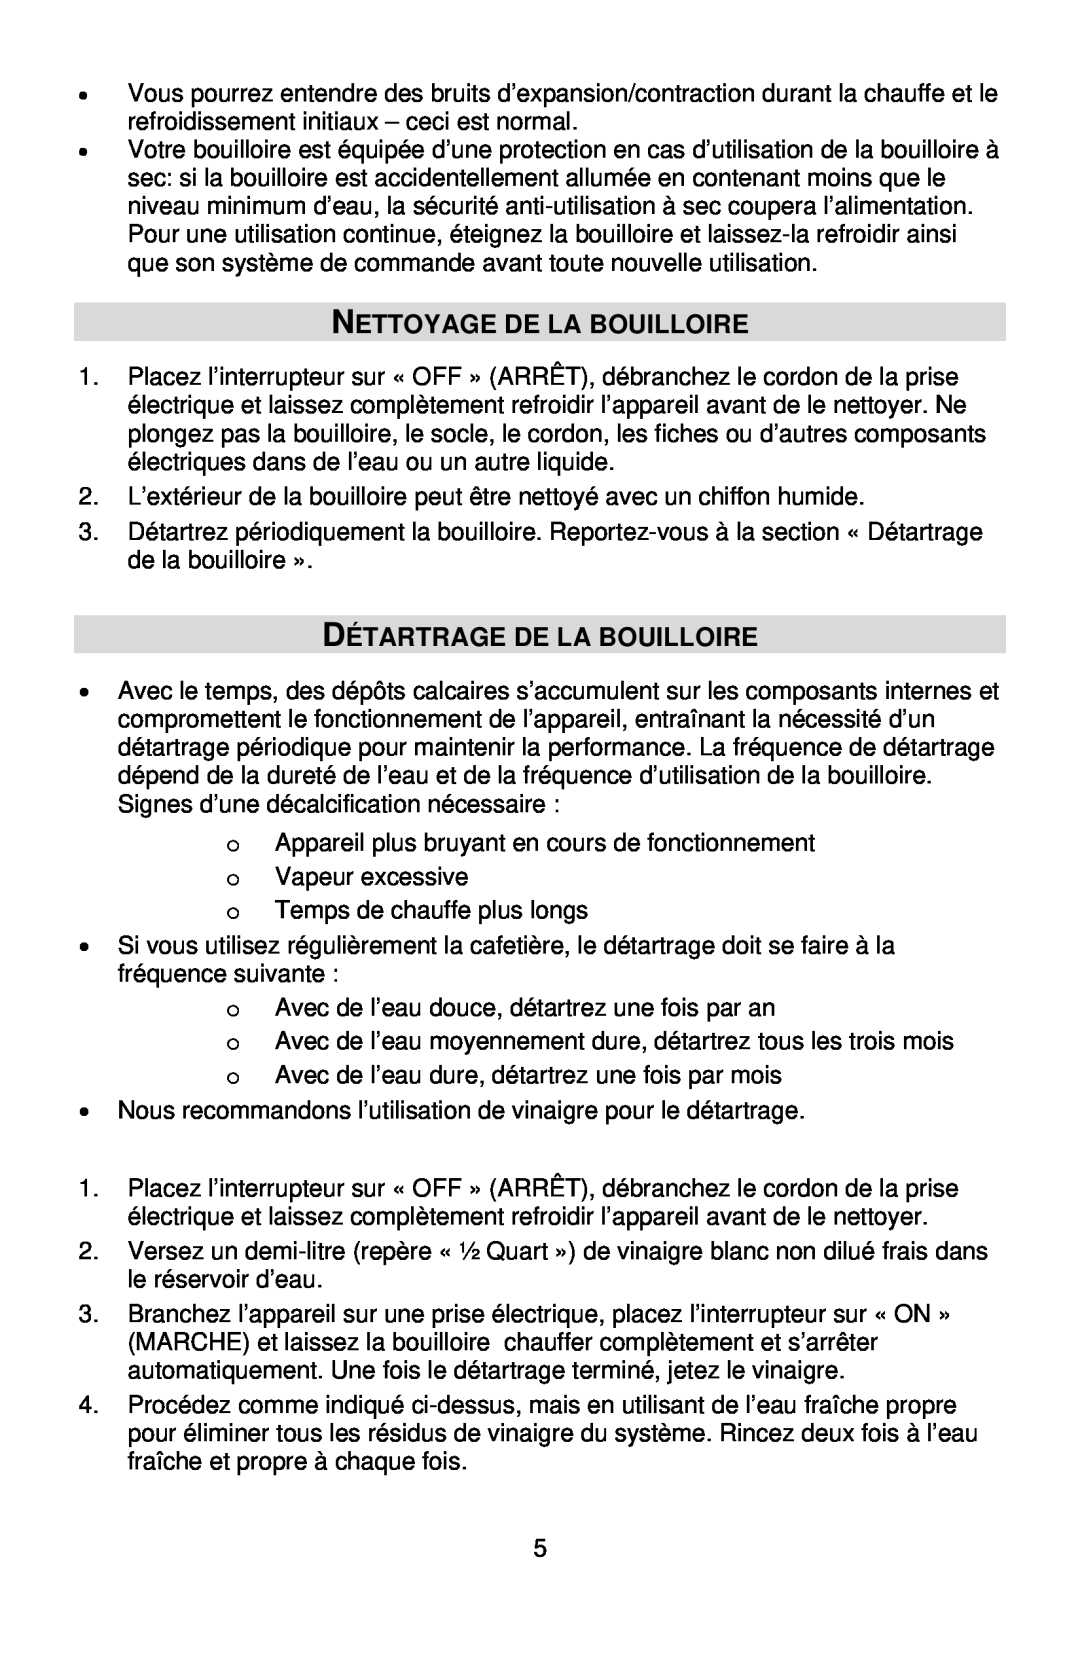 West Bend 53783 instruction manual Nettoyage De La Bouilloire, Détartrage De La Bouilloire 